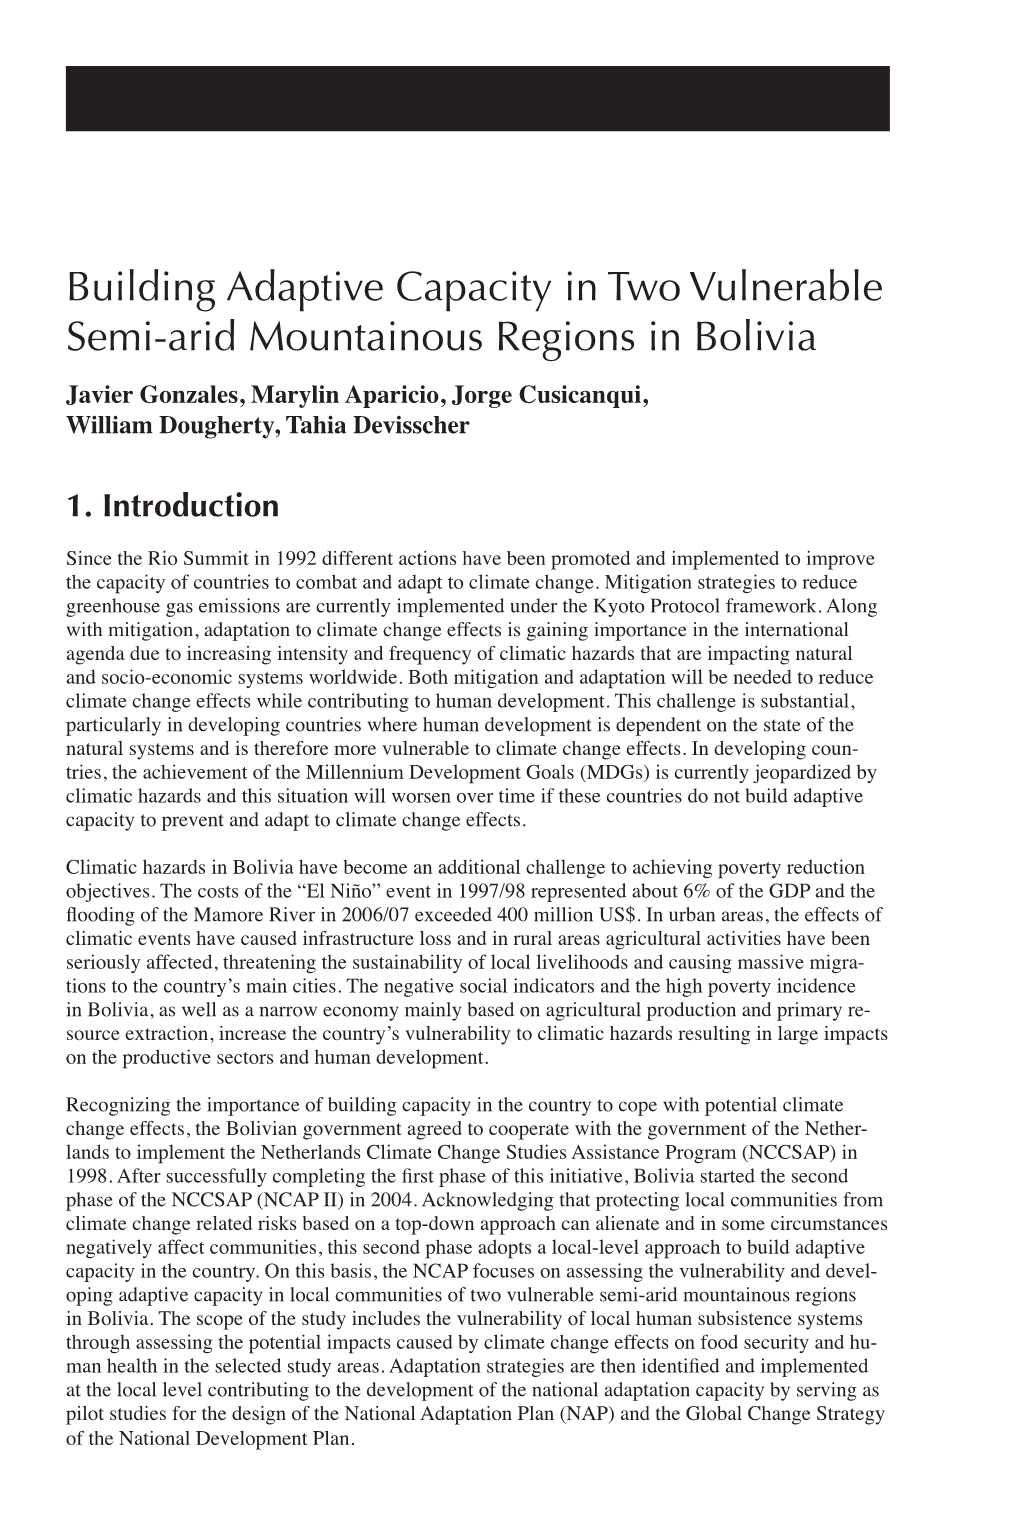 Building Adaptive Capacity in Two Semi-Arid Regions Of